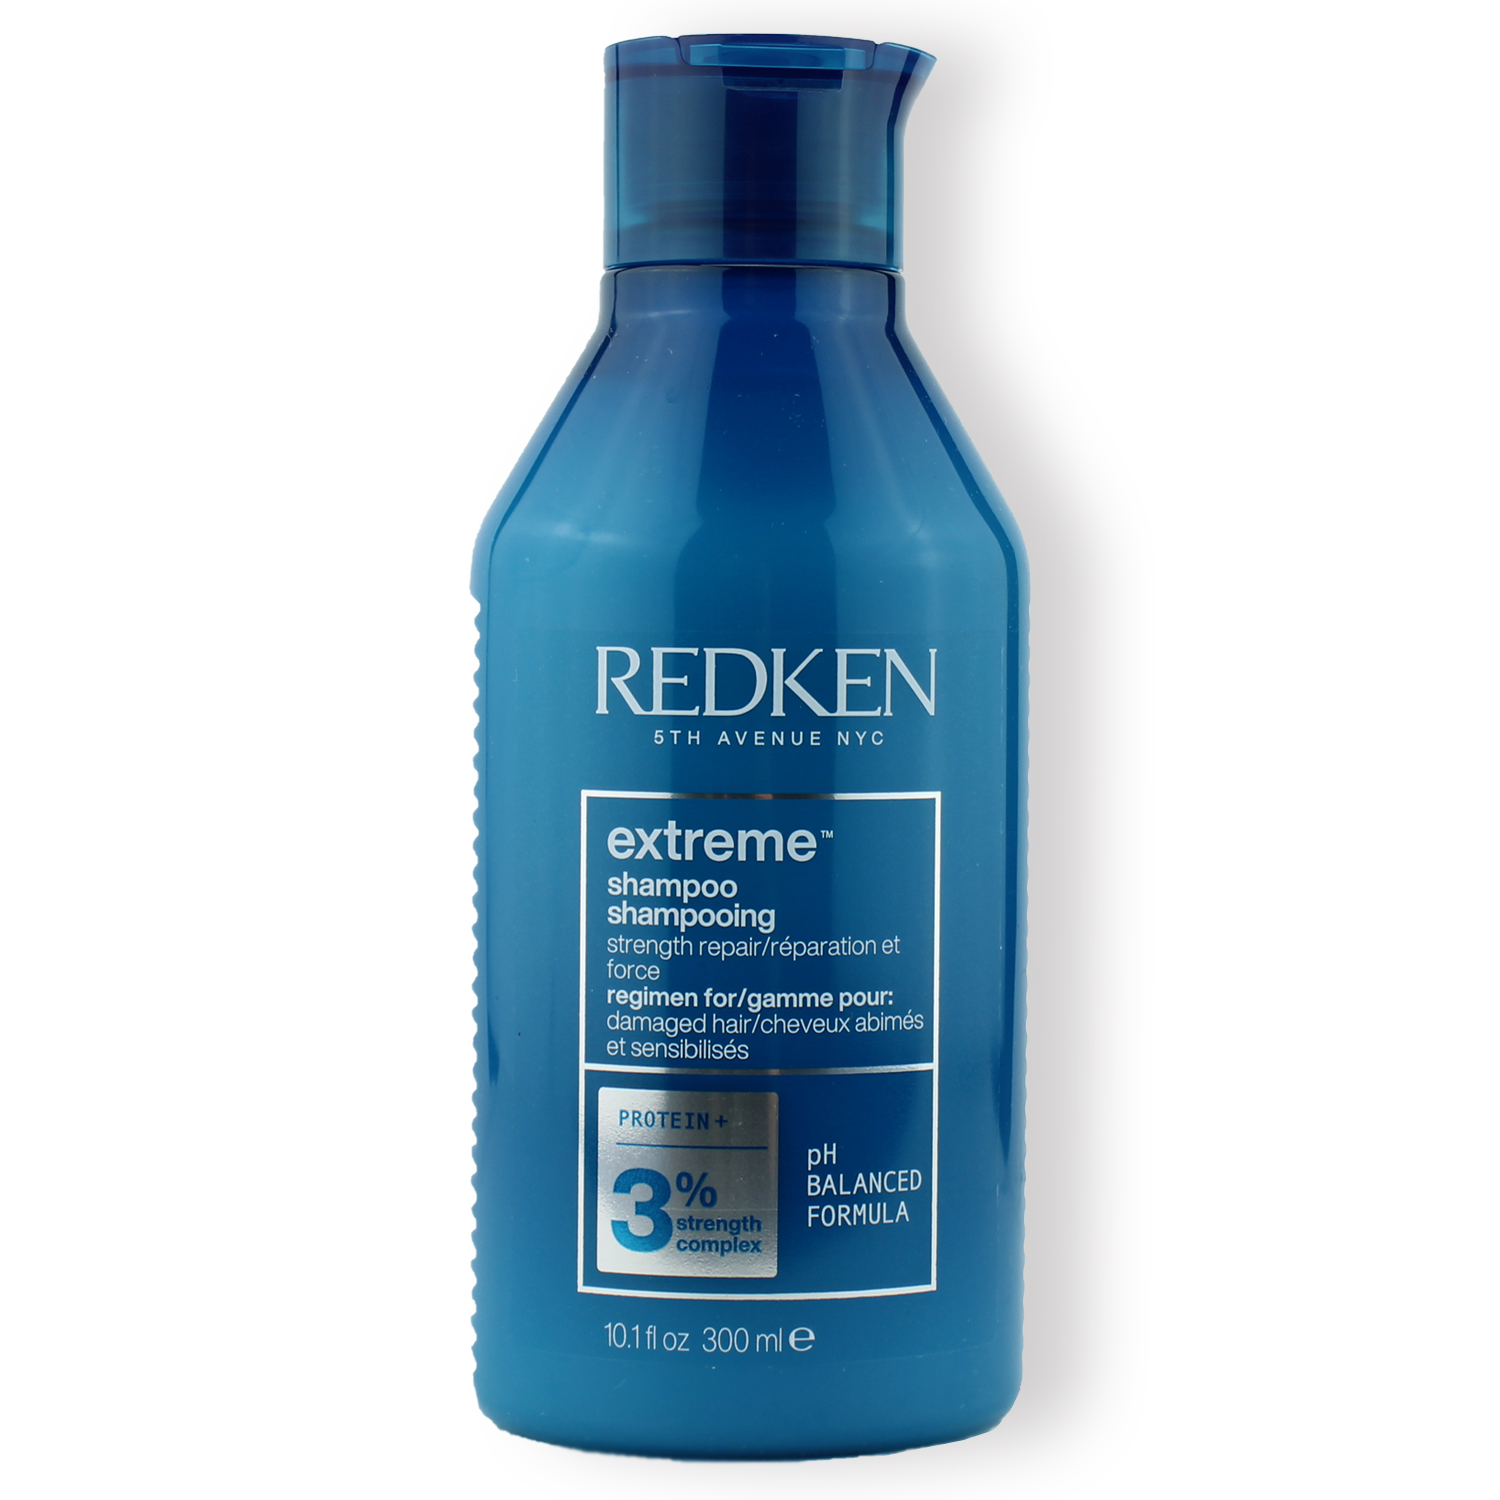 Redken Extreme Shampoo Protein+ 3% 300ml